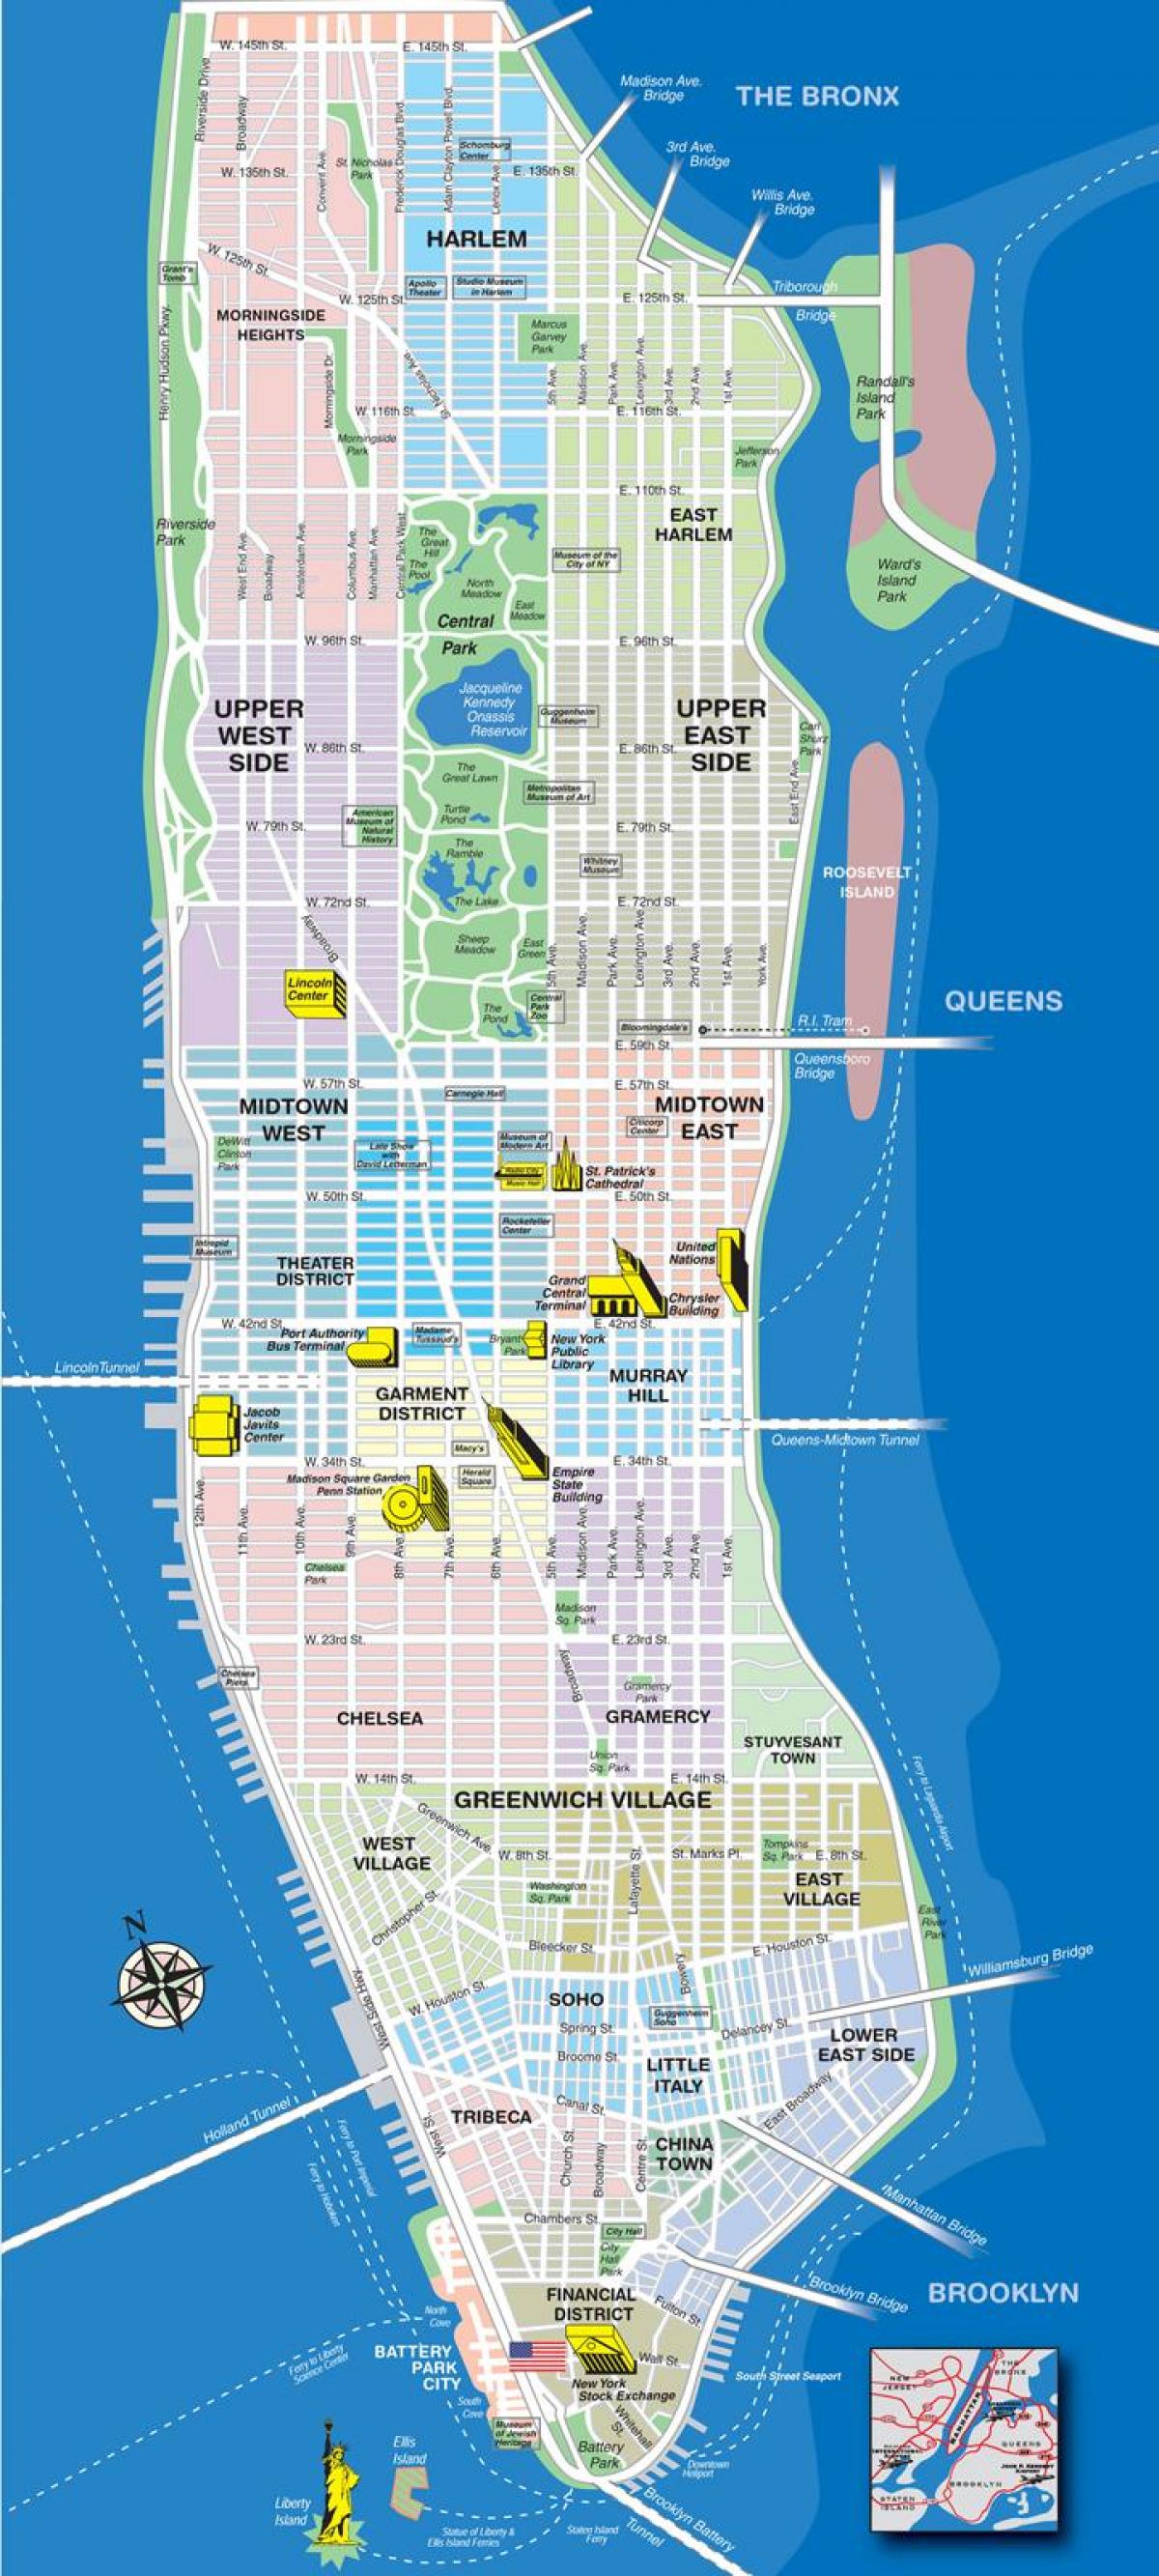 แผนที่ของ avenues ในแมนฮัตตัน